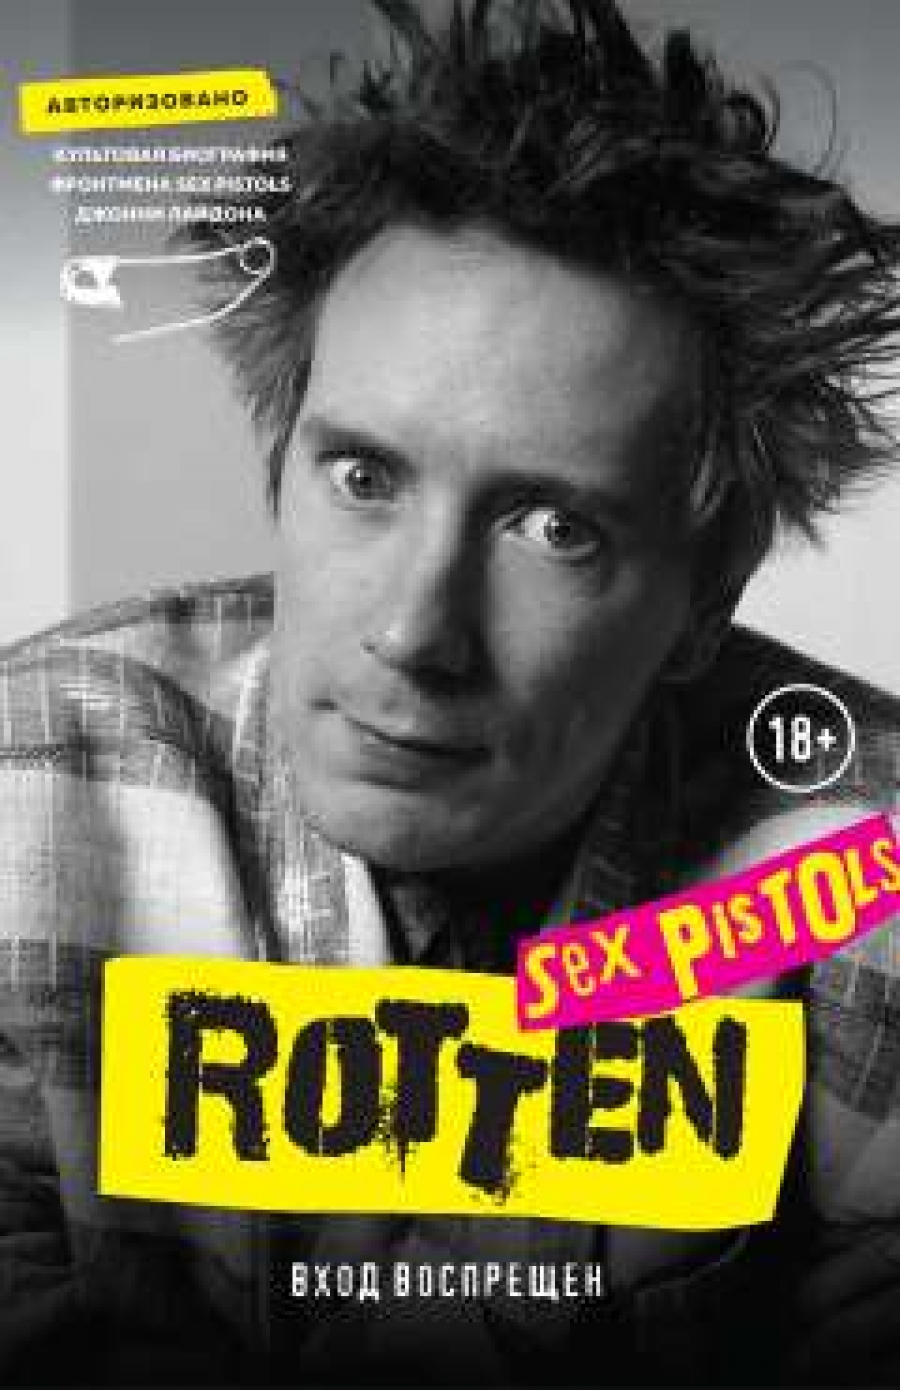  . Rotten.  .    Sex Pistols   